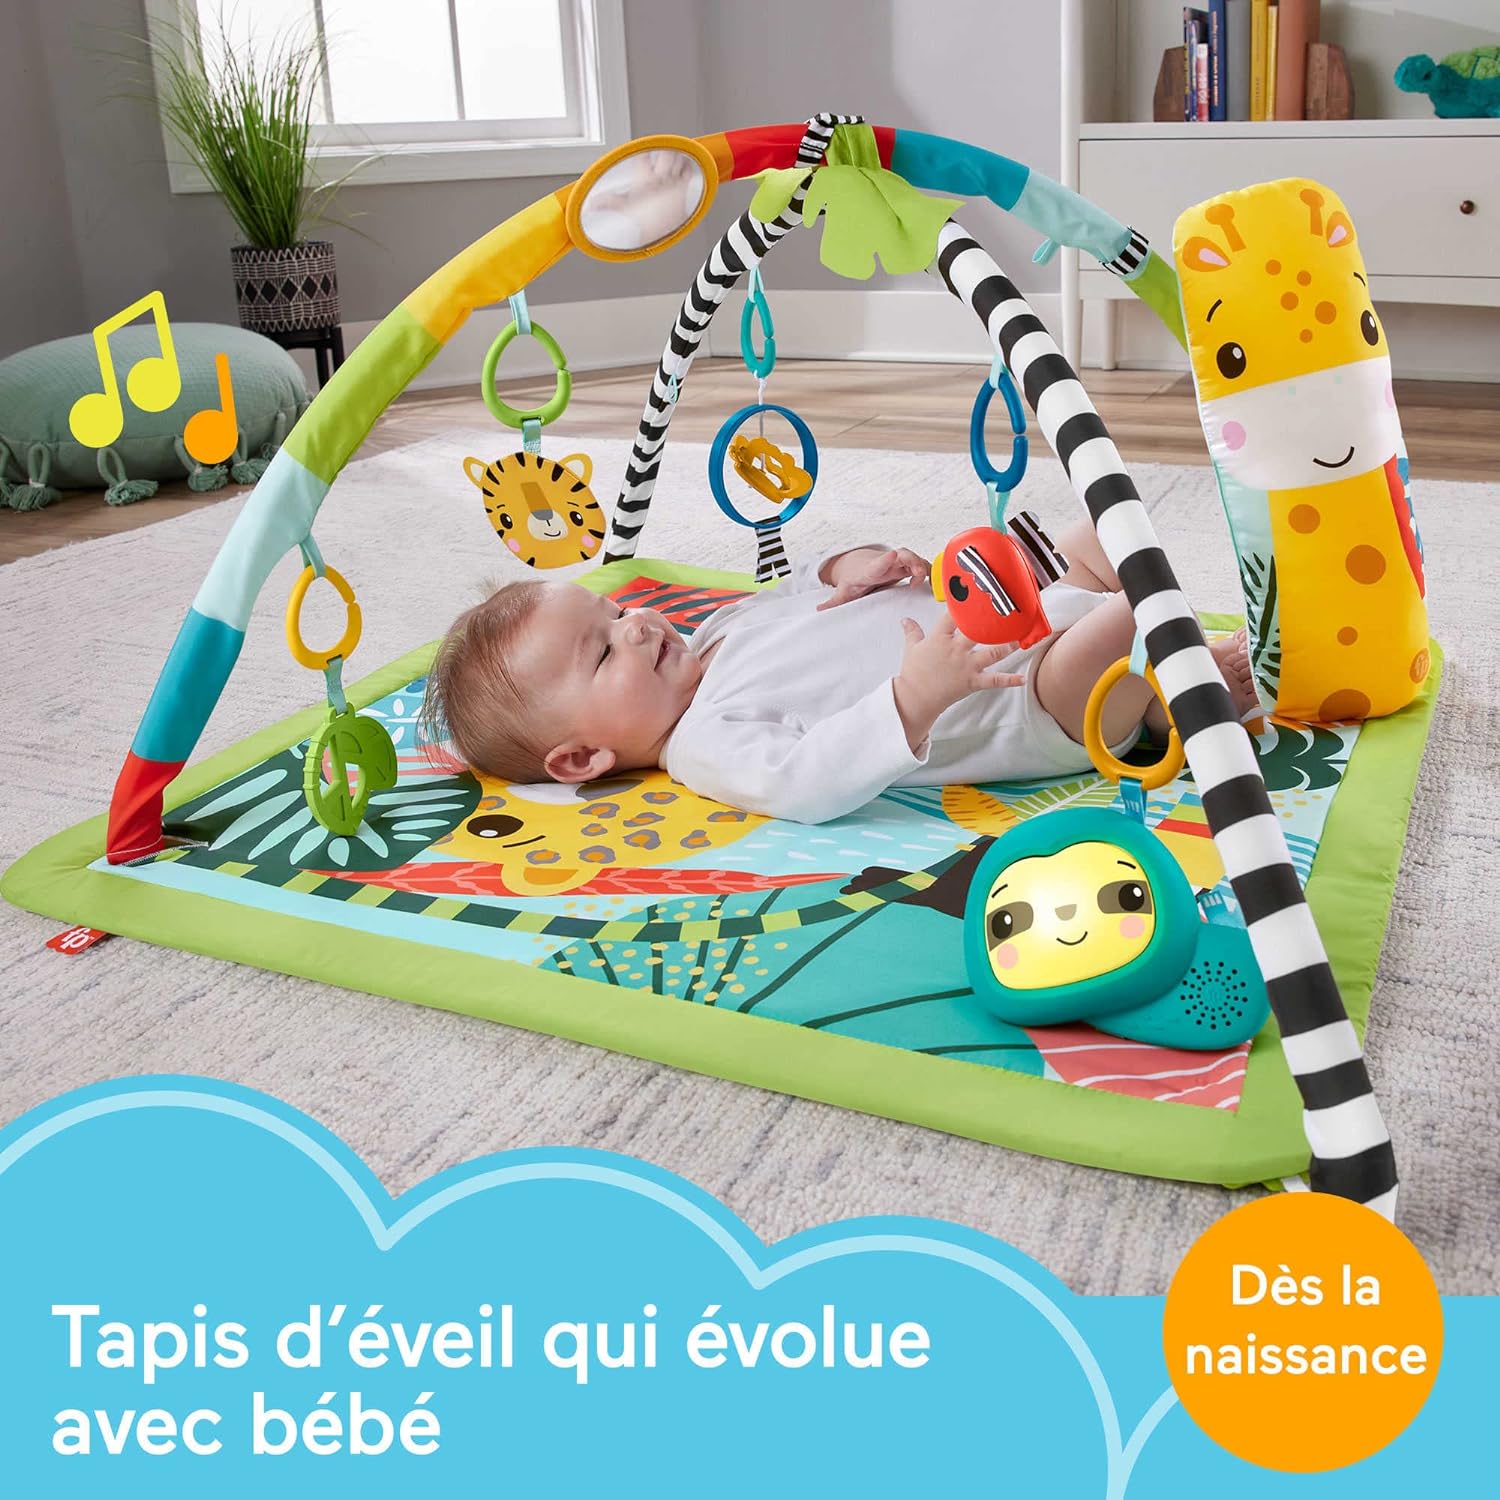 Tapis de jeu Montessori, éveil & motricité bébé